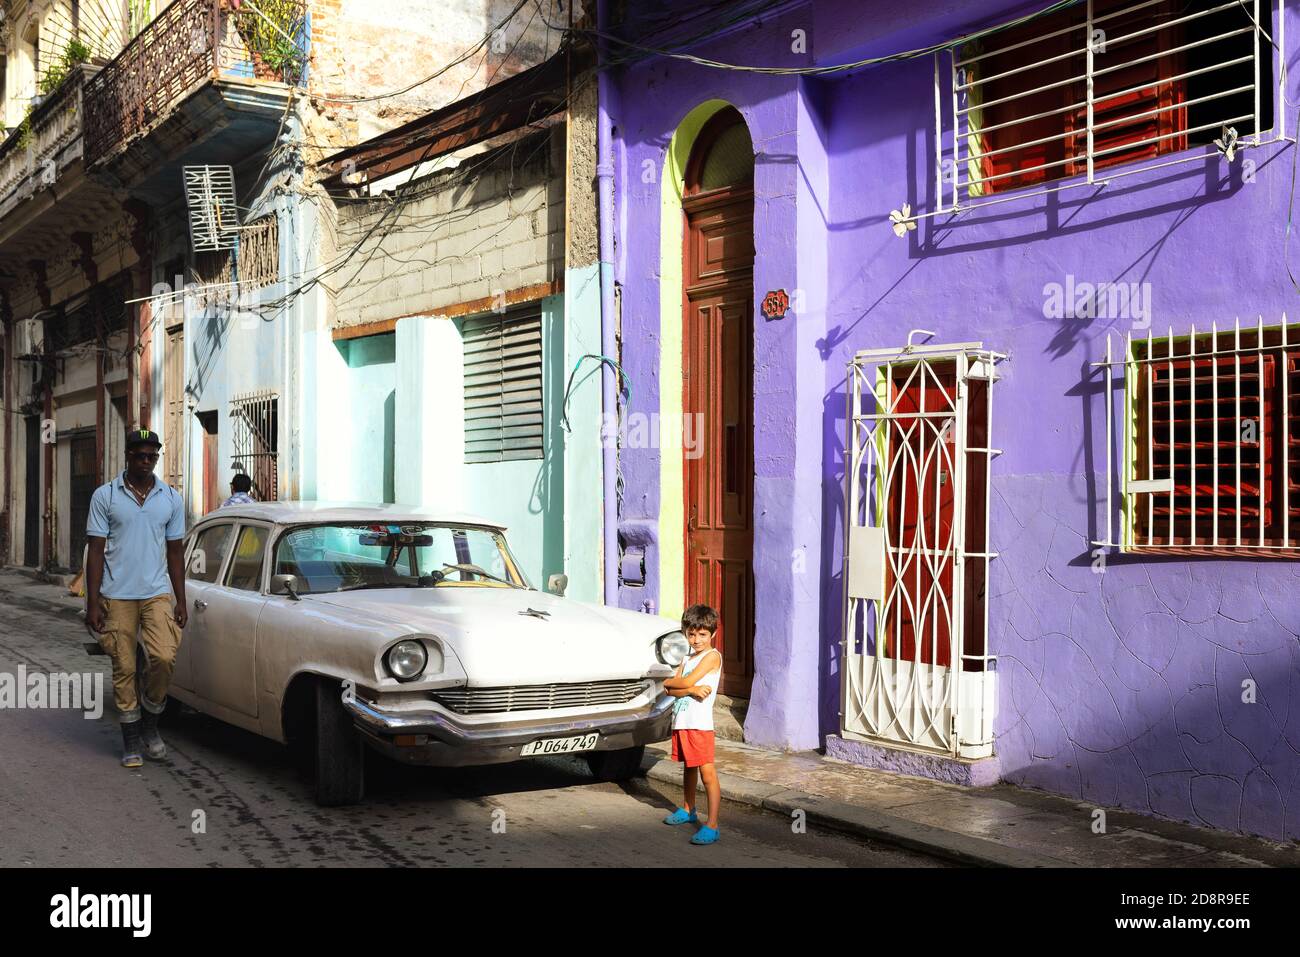 Scena Street mattina a l'Avana Vieja, Cuba. Architettura, persone e auto d'epoca americana. Foto Stock